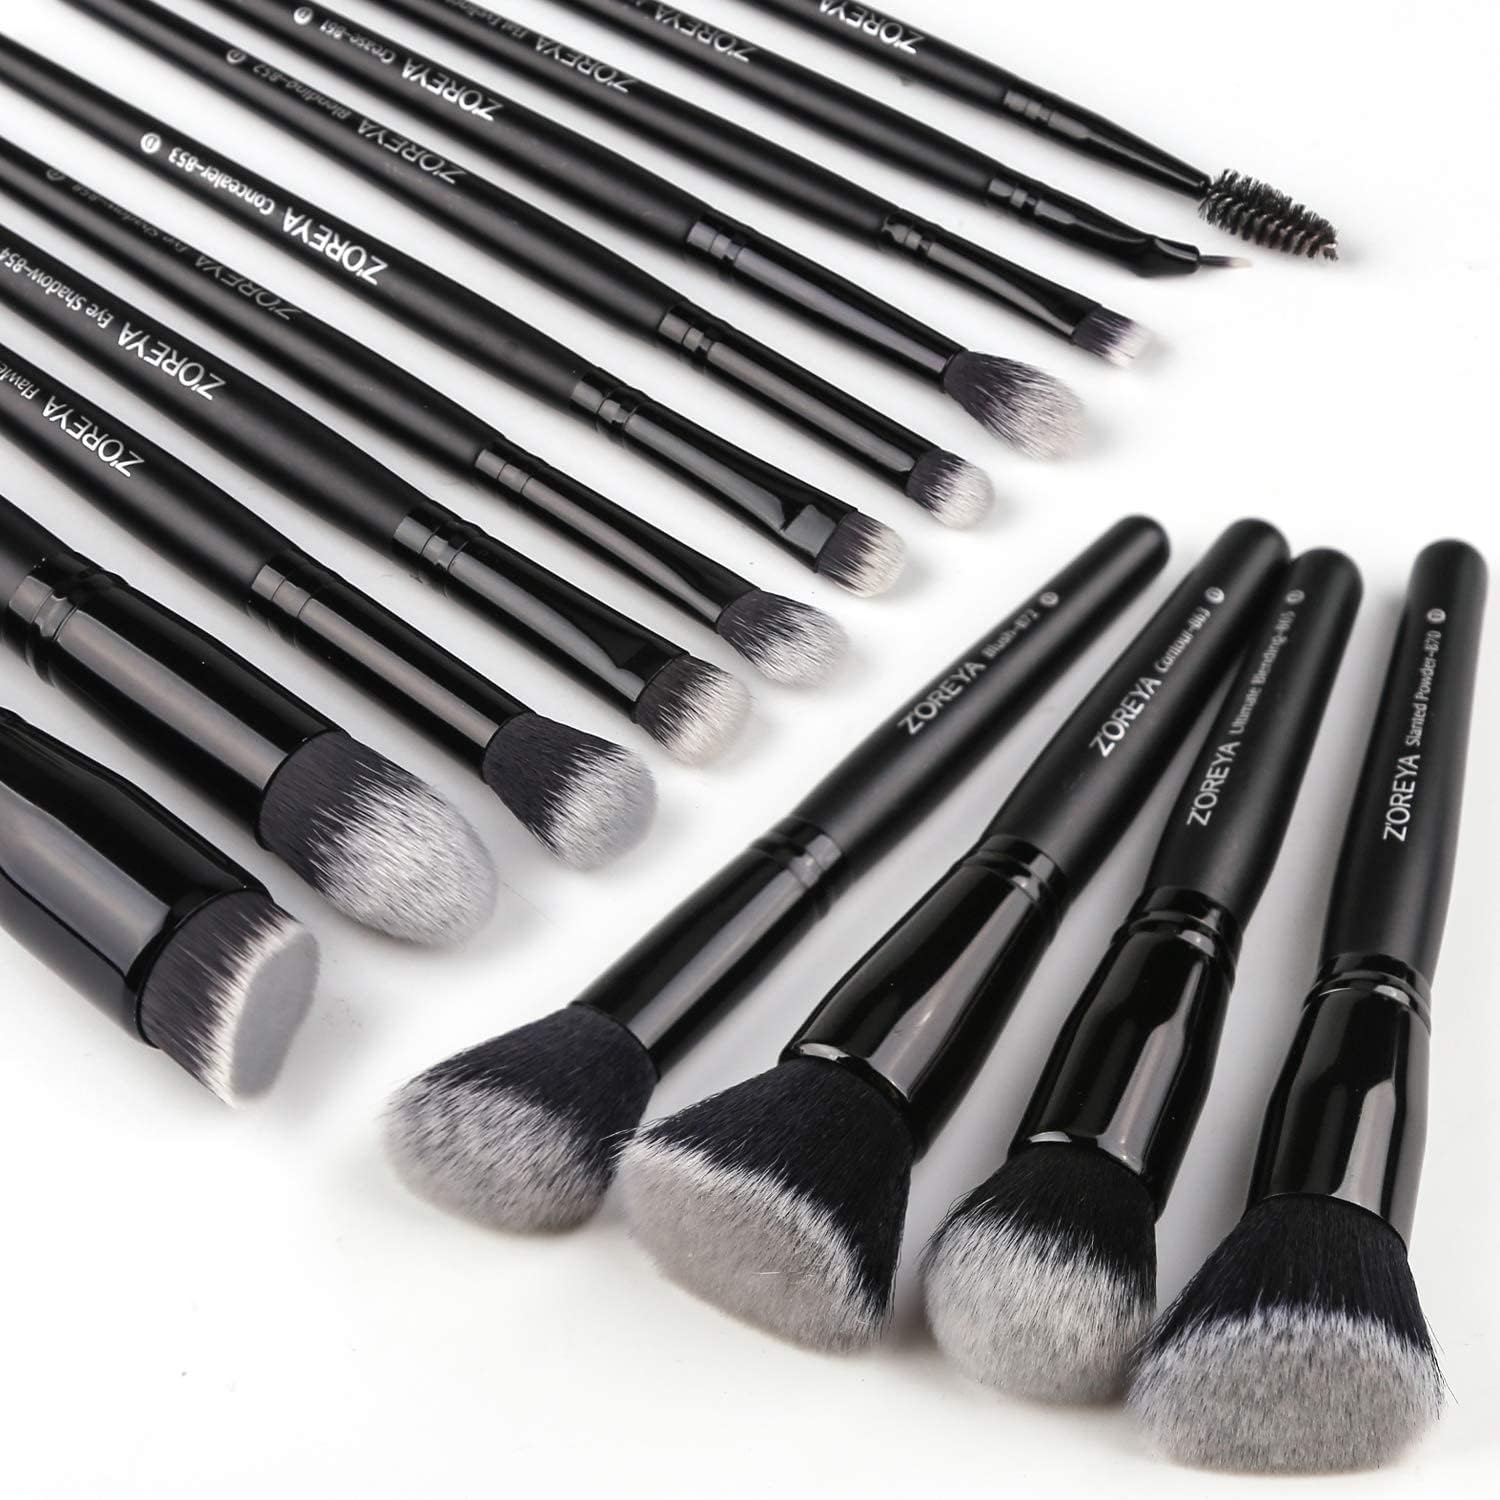 Professional Elf Makeup Brushesset, Dense Eye Makeup Brush Kit, Face Makeup Brushes, Foundation Contour Brush, Eyeshadow Blending Brush 15PCS (Black)